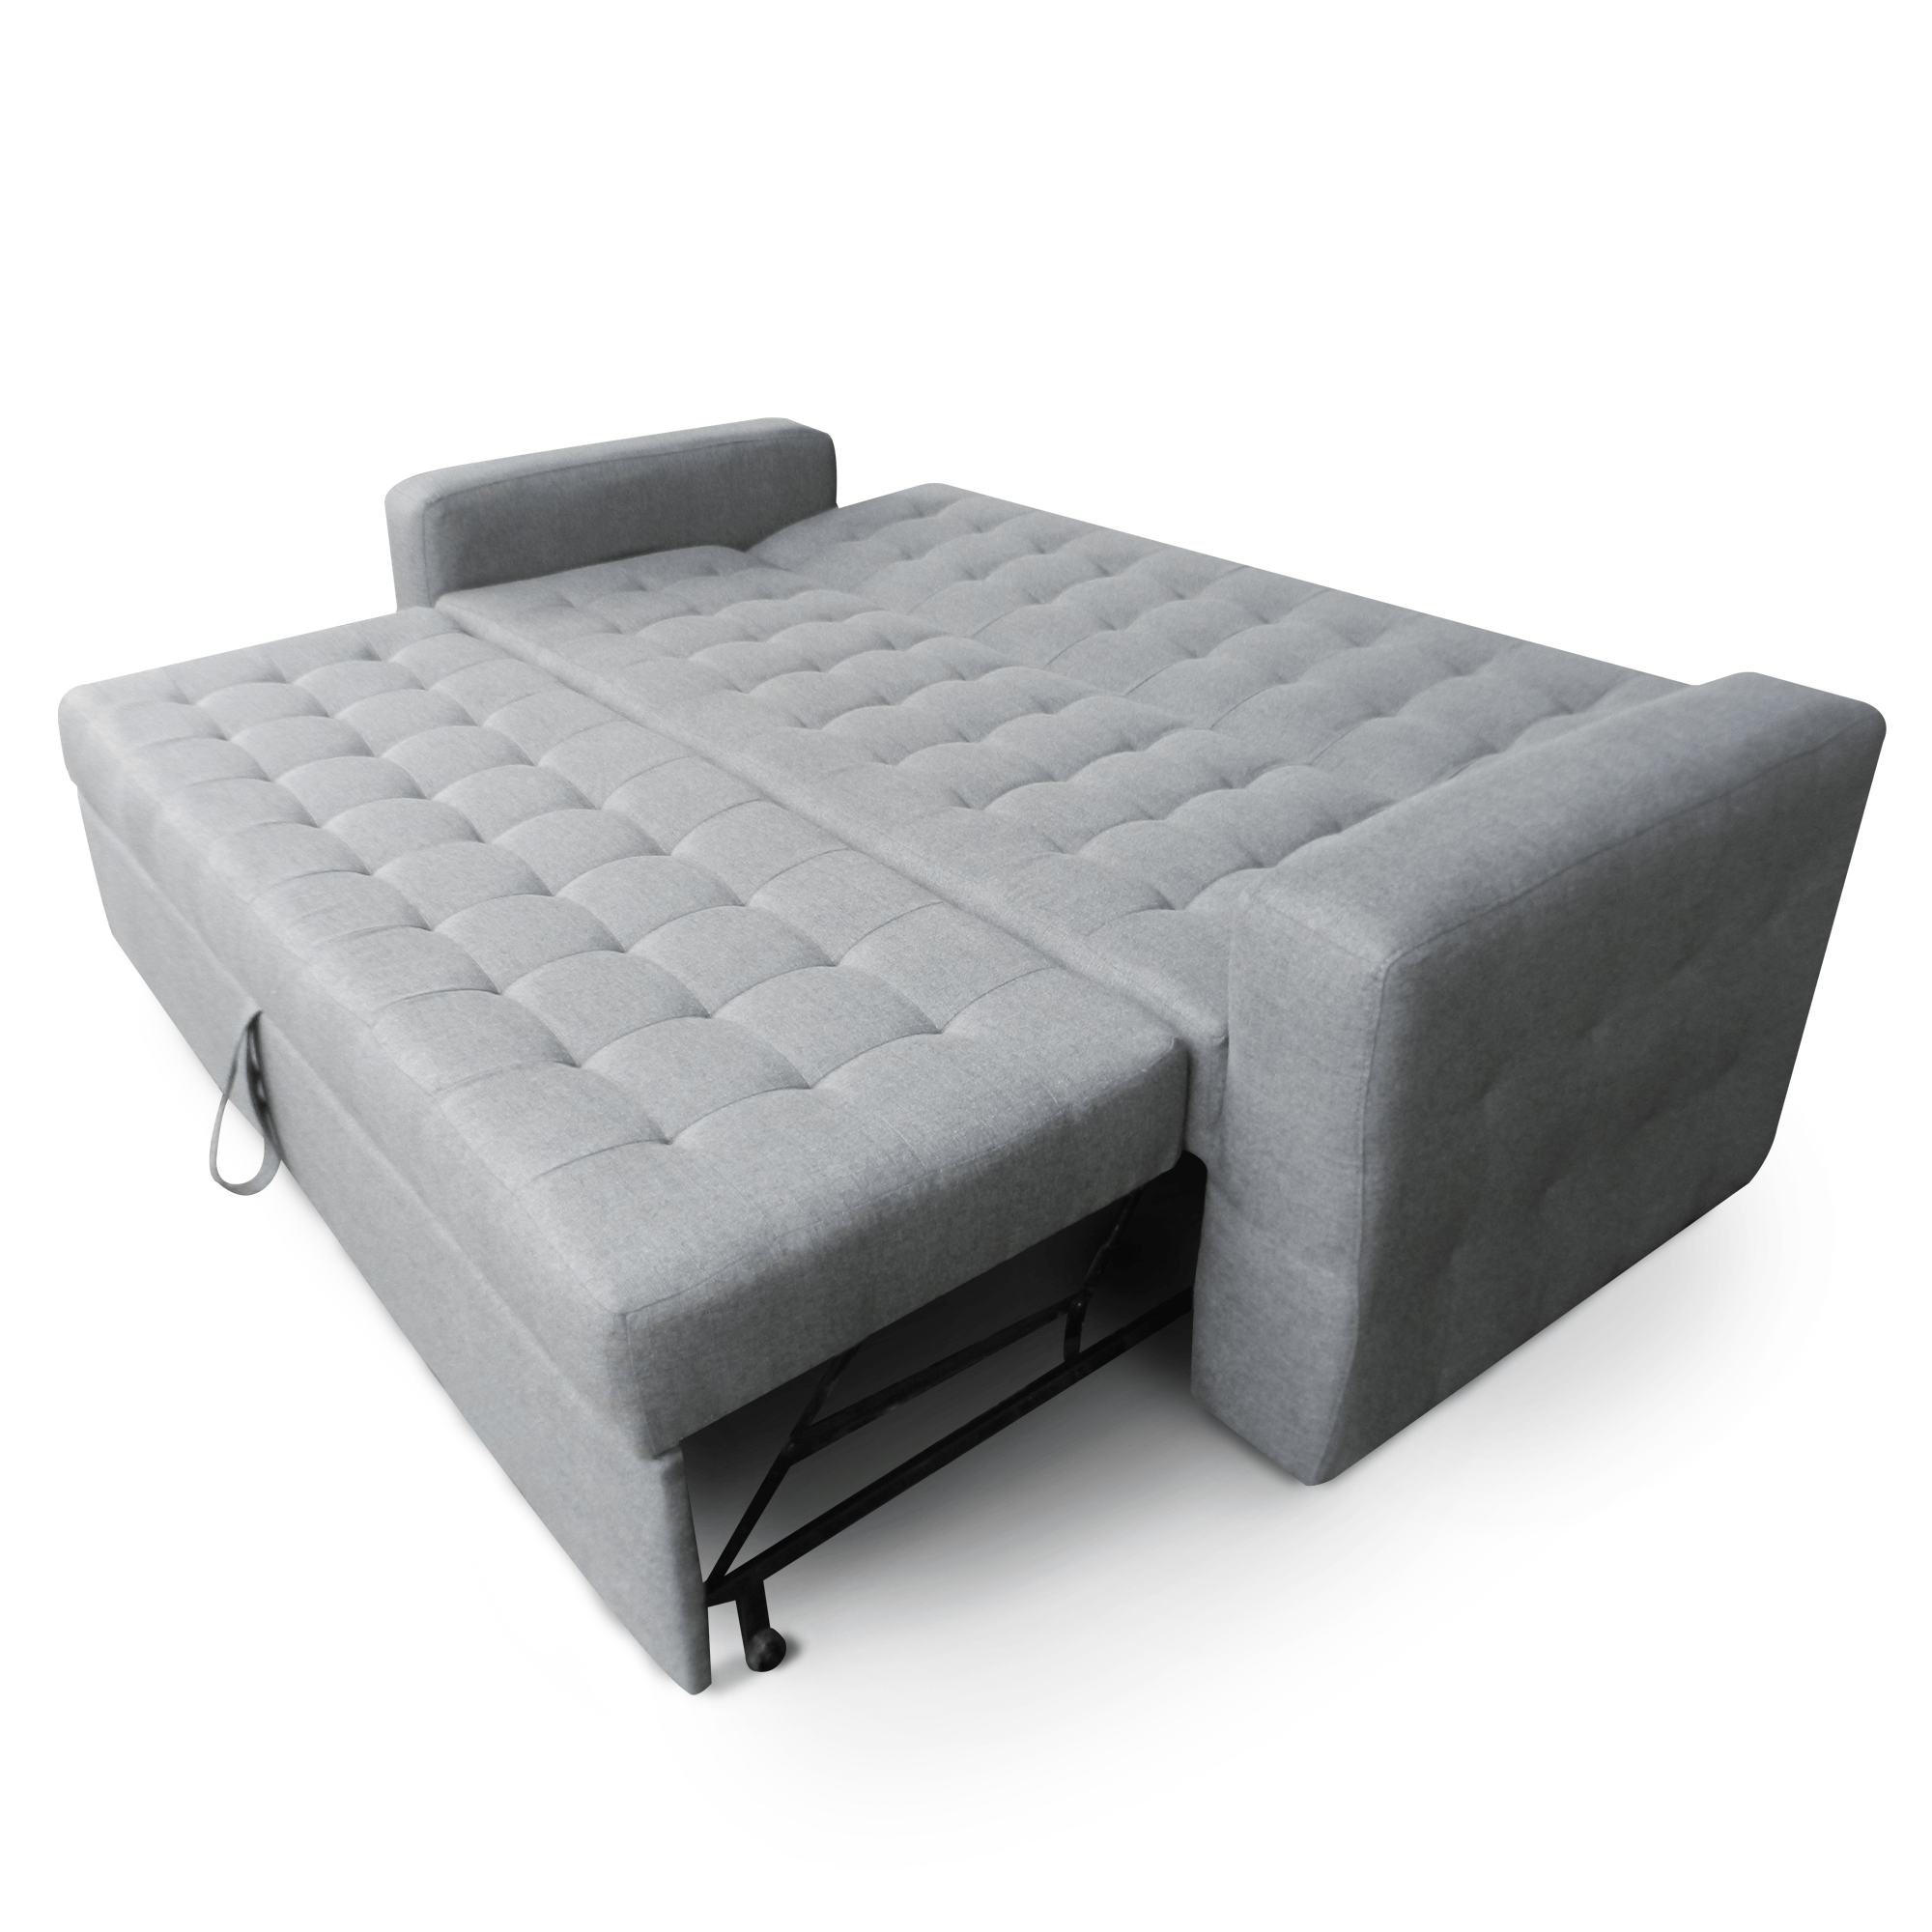 Sofa cama Litto matrimonial - Mobydec Muebles  Venta de muebles en línea  salas, sillones, mesas